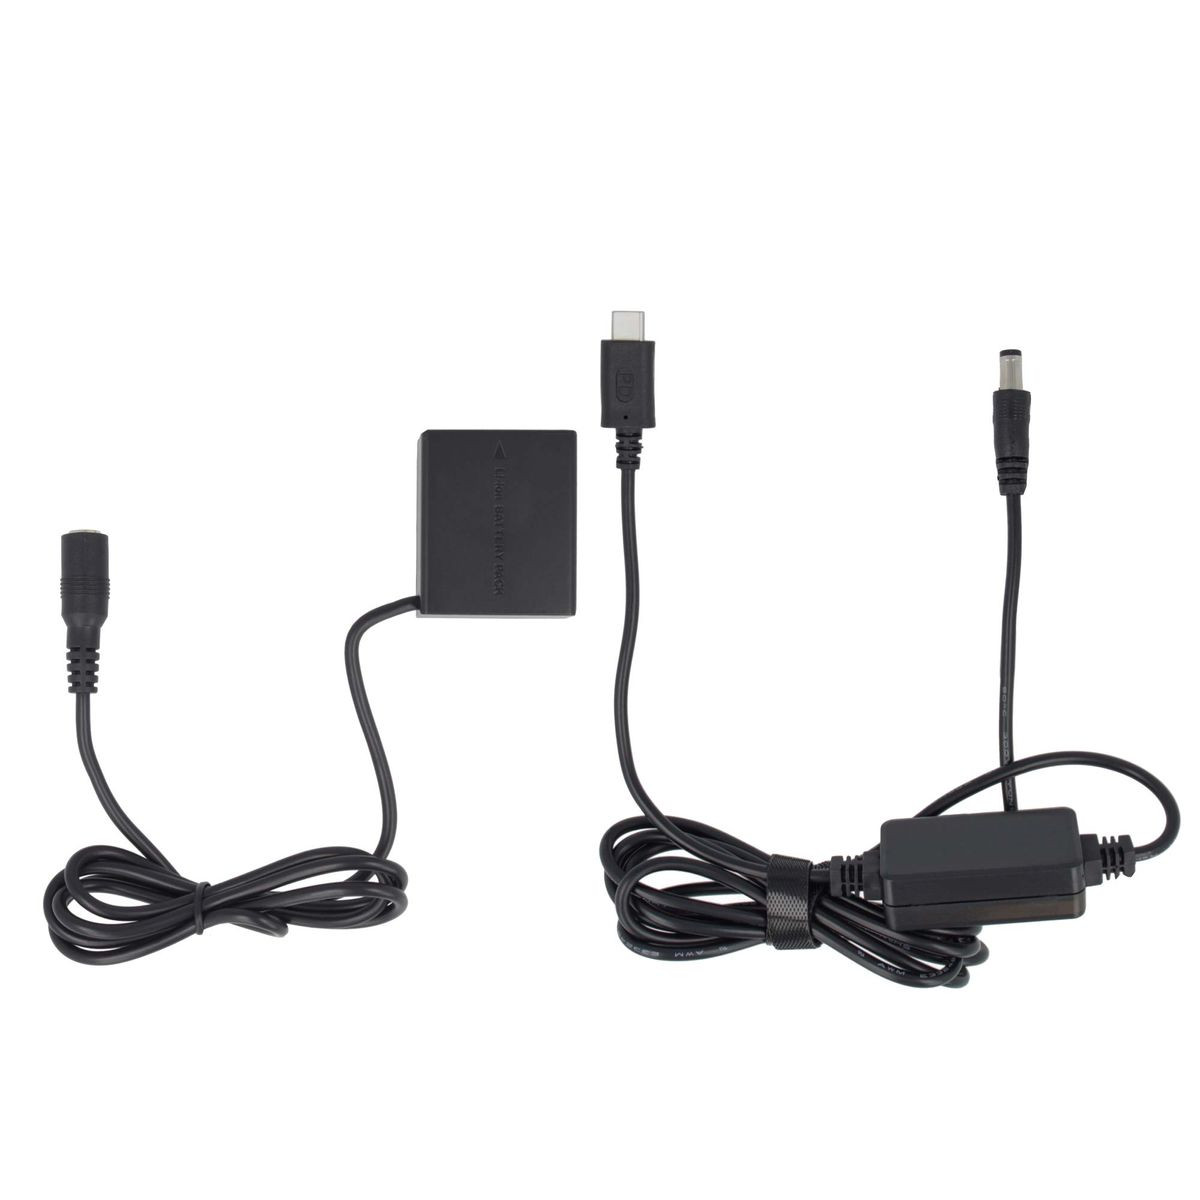 AKKU-KING USB-C mit keine DCC3 Ladegerät Panasonic, + Kuppler kompatibel Angabe Panasonic Adapter